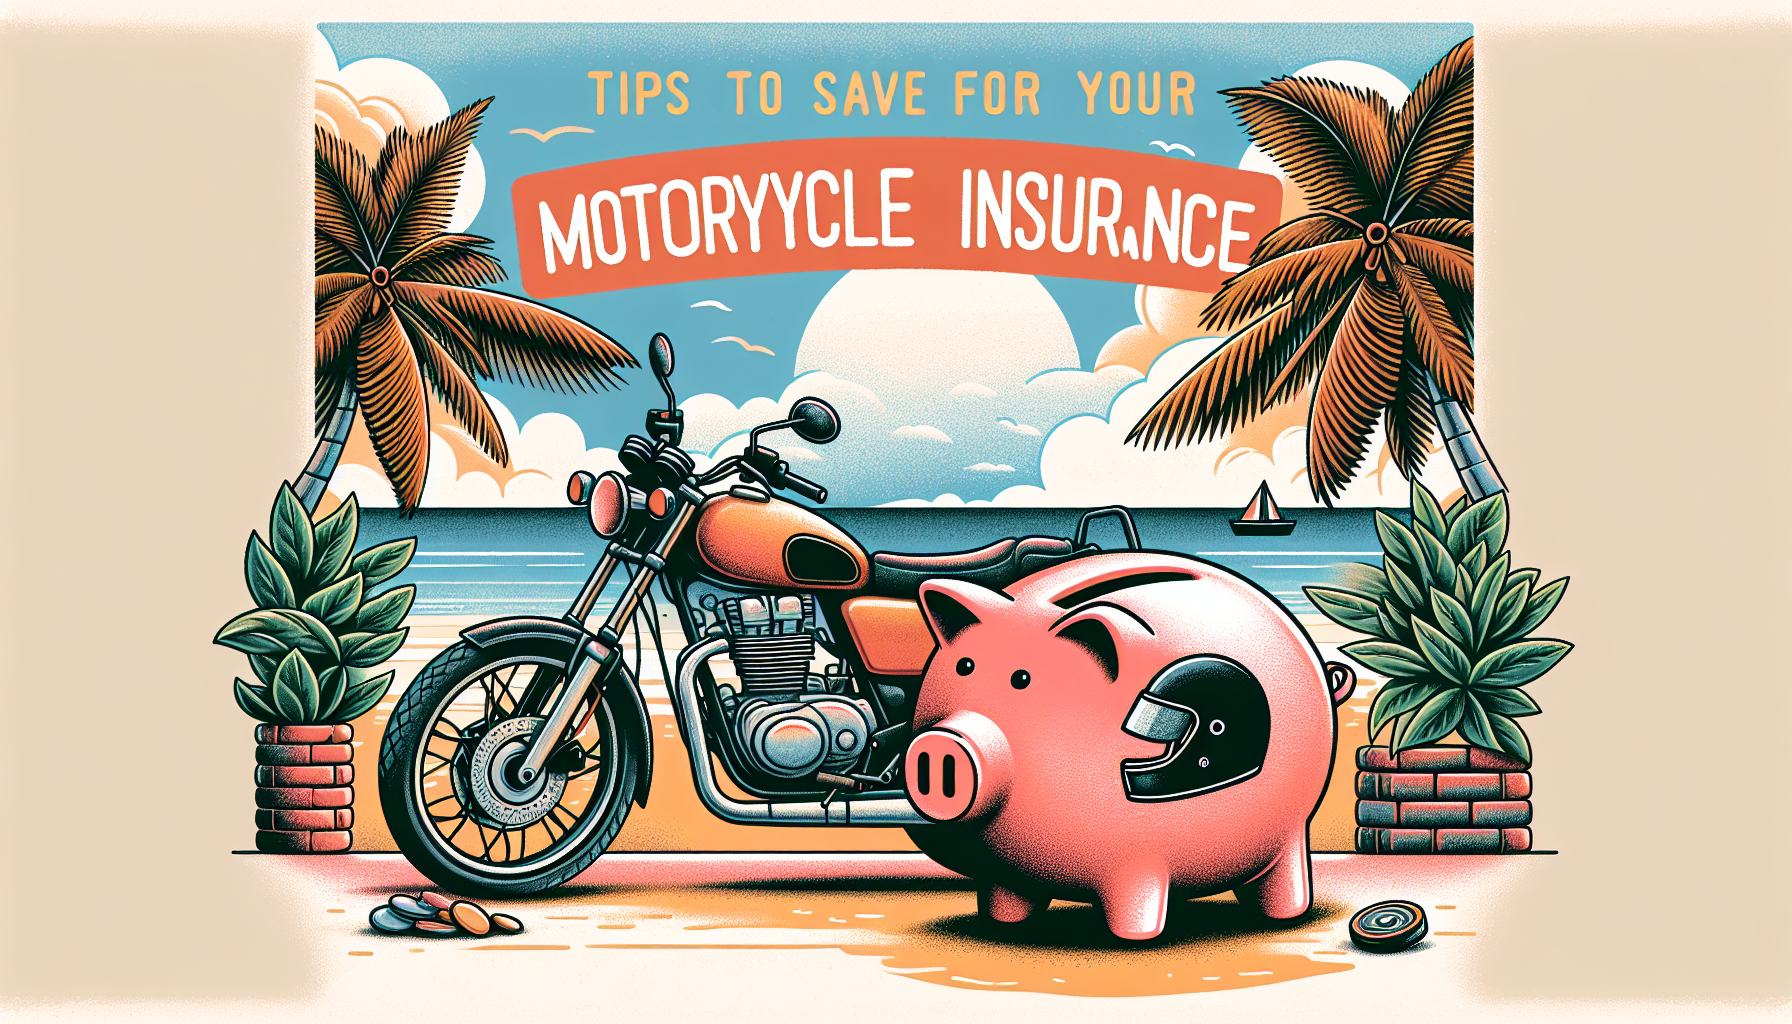 découvrez nos conseils pour économiser sur votre assurance moto à la réunion et assurez-vous en toute sérénité. profitez des meilleures offres d'assurance moto à la réunion.